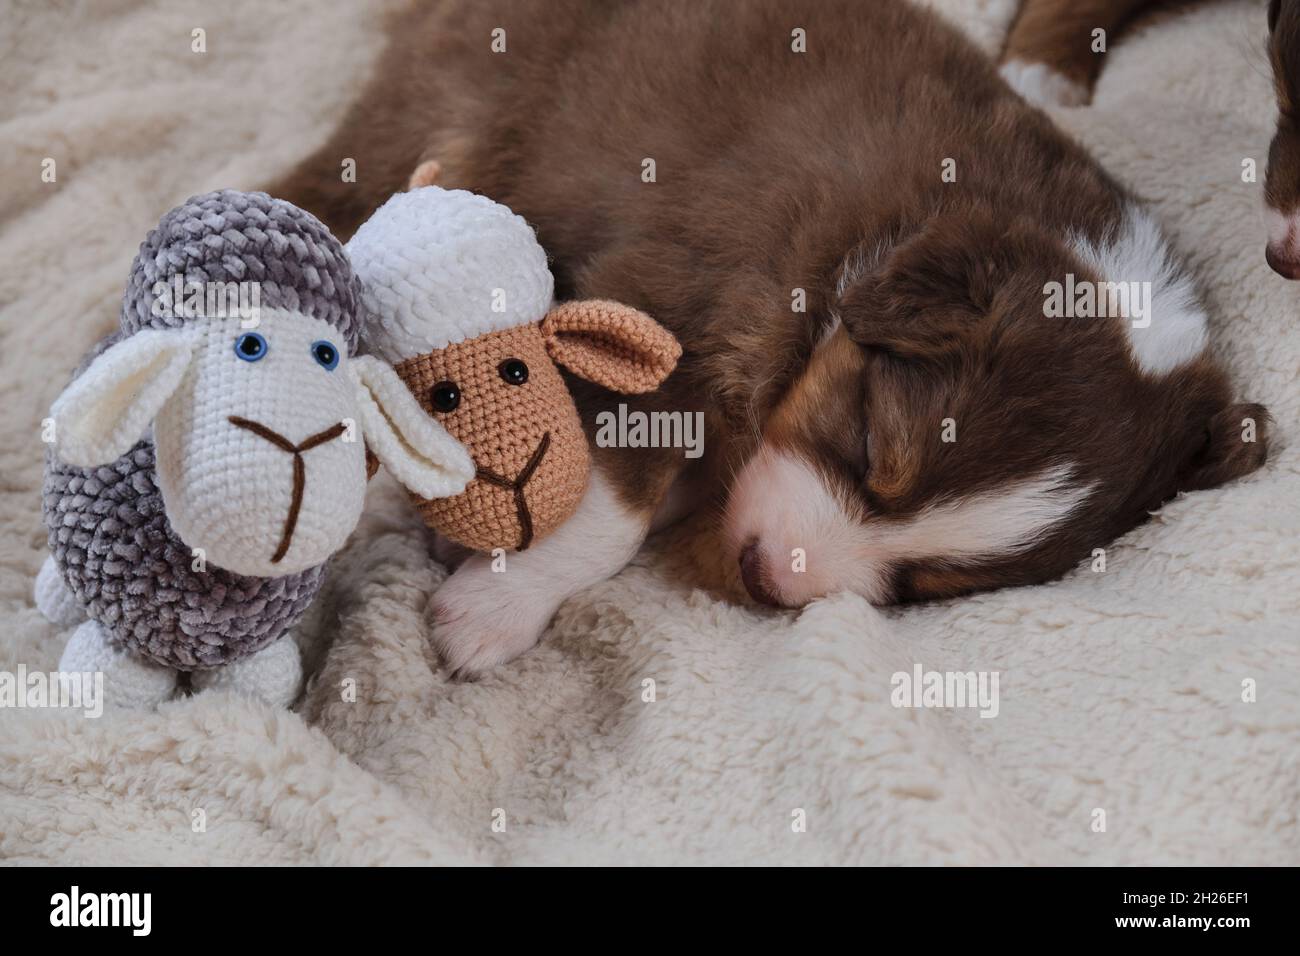 Chien de berger australien tricolore rouge dort doucement sur une  couverture en peau de mouton blanche douce et douce à côté de brebis  amigurumi de jouet fait à la main.Bébé australien est